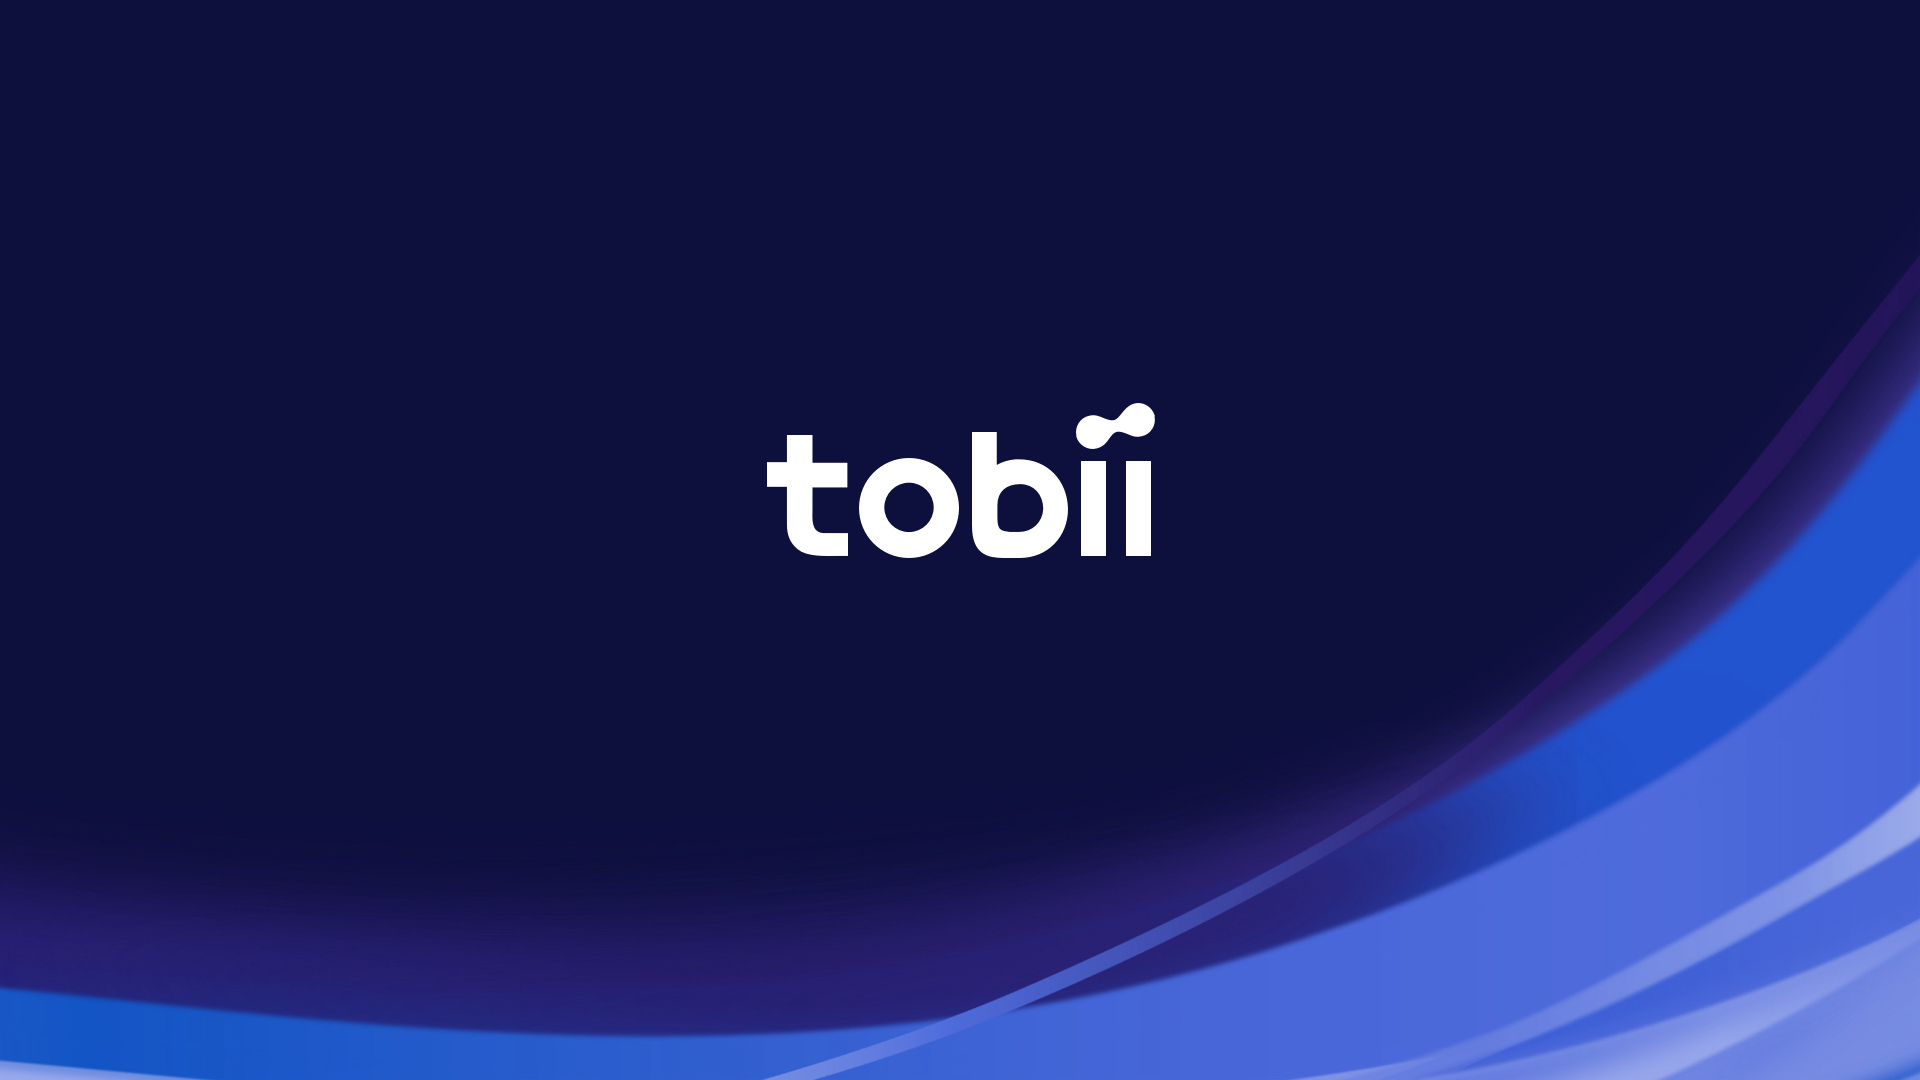 www.tobii.com